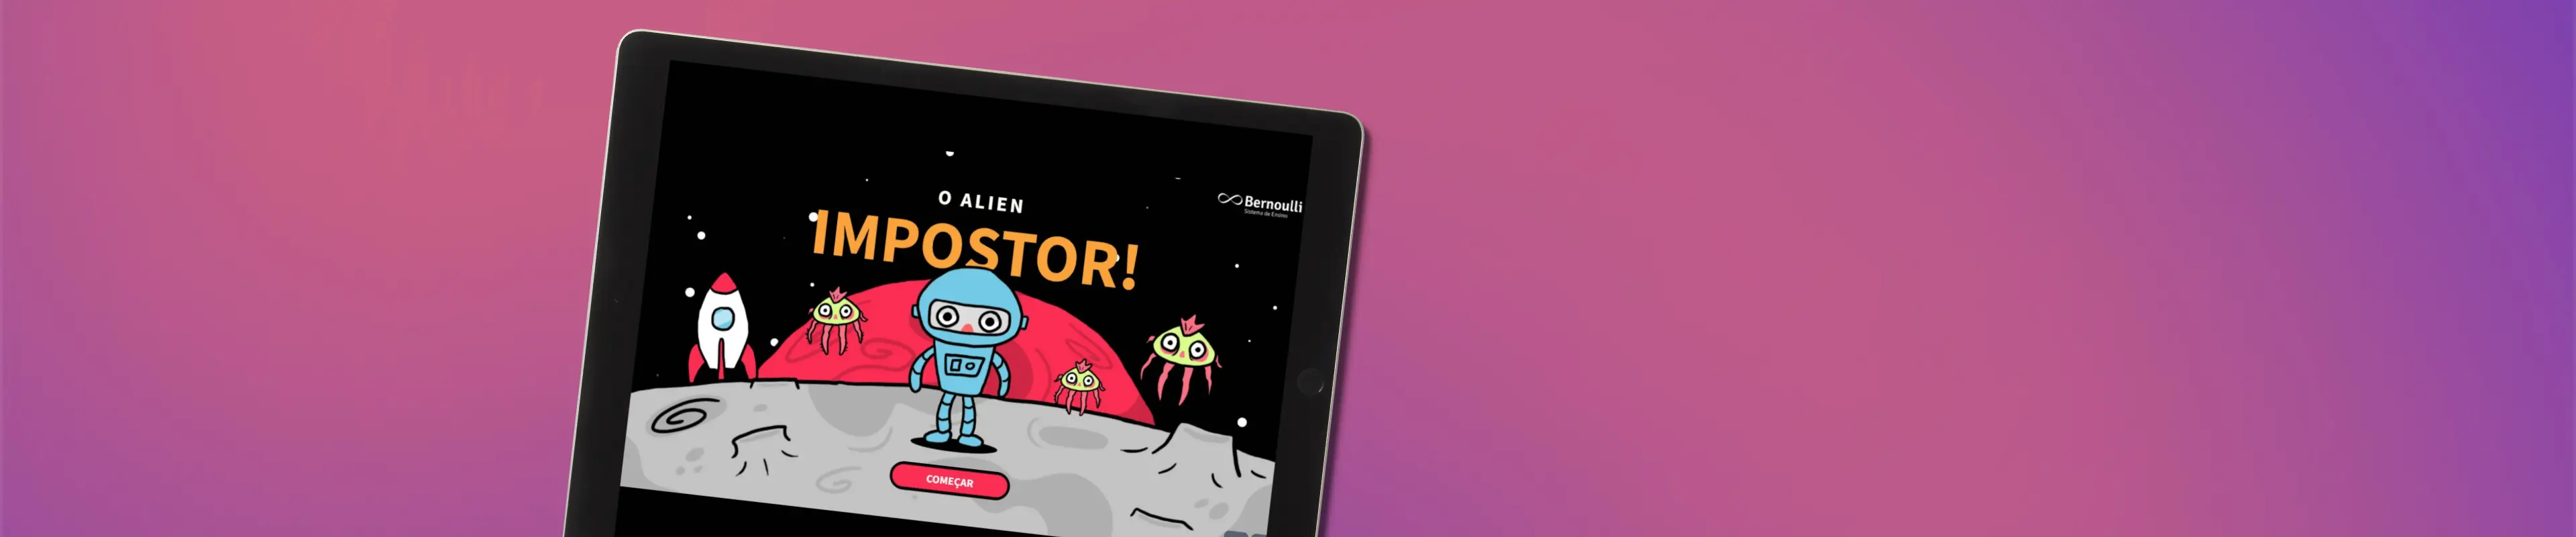 Tablet mostrando a página inicial da atividade "O Alien Impostor!"